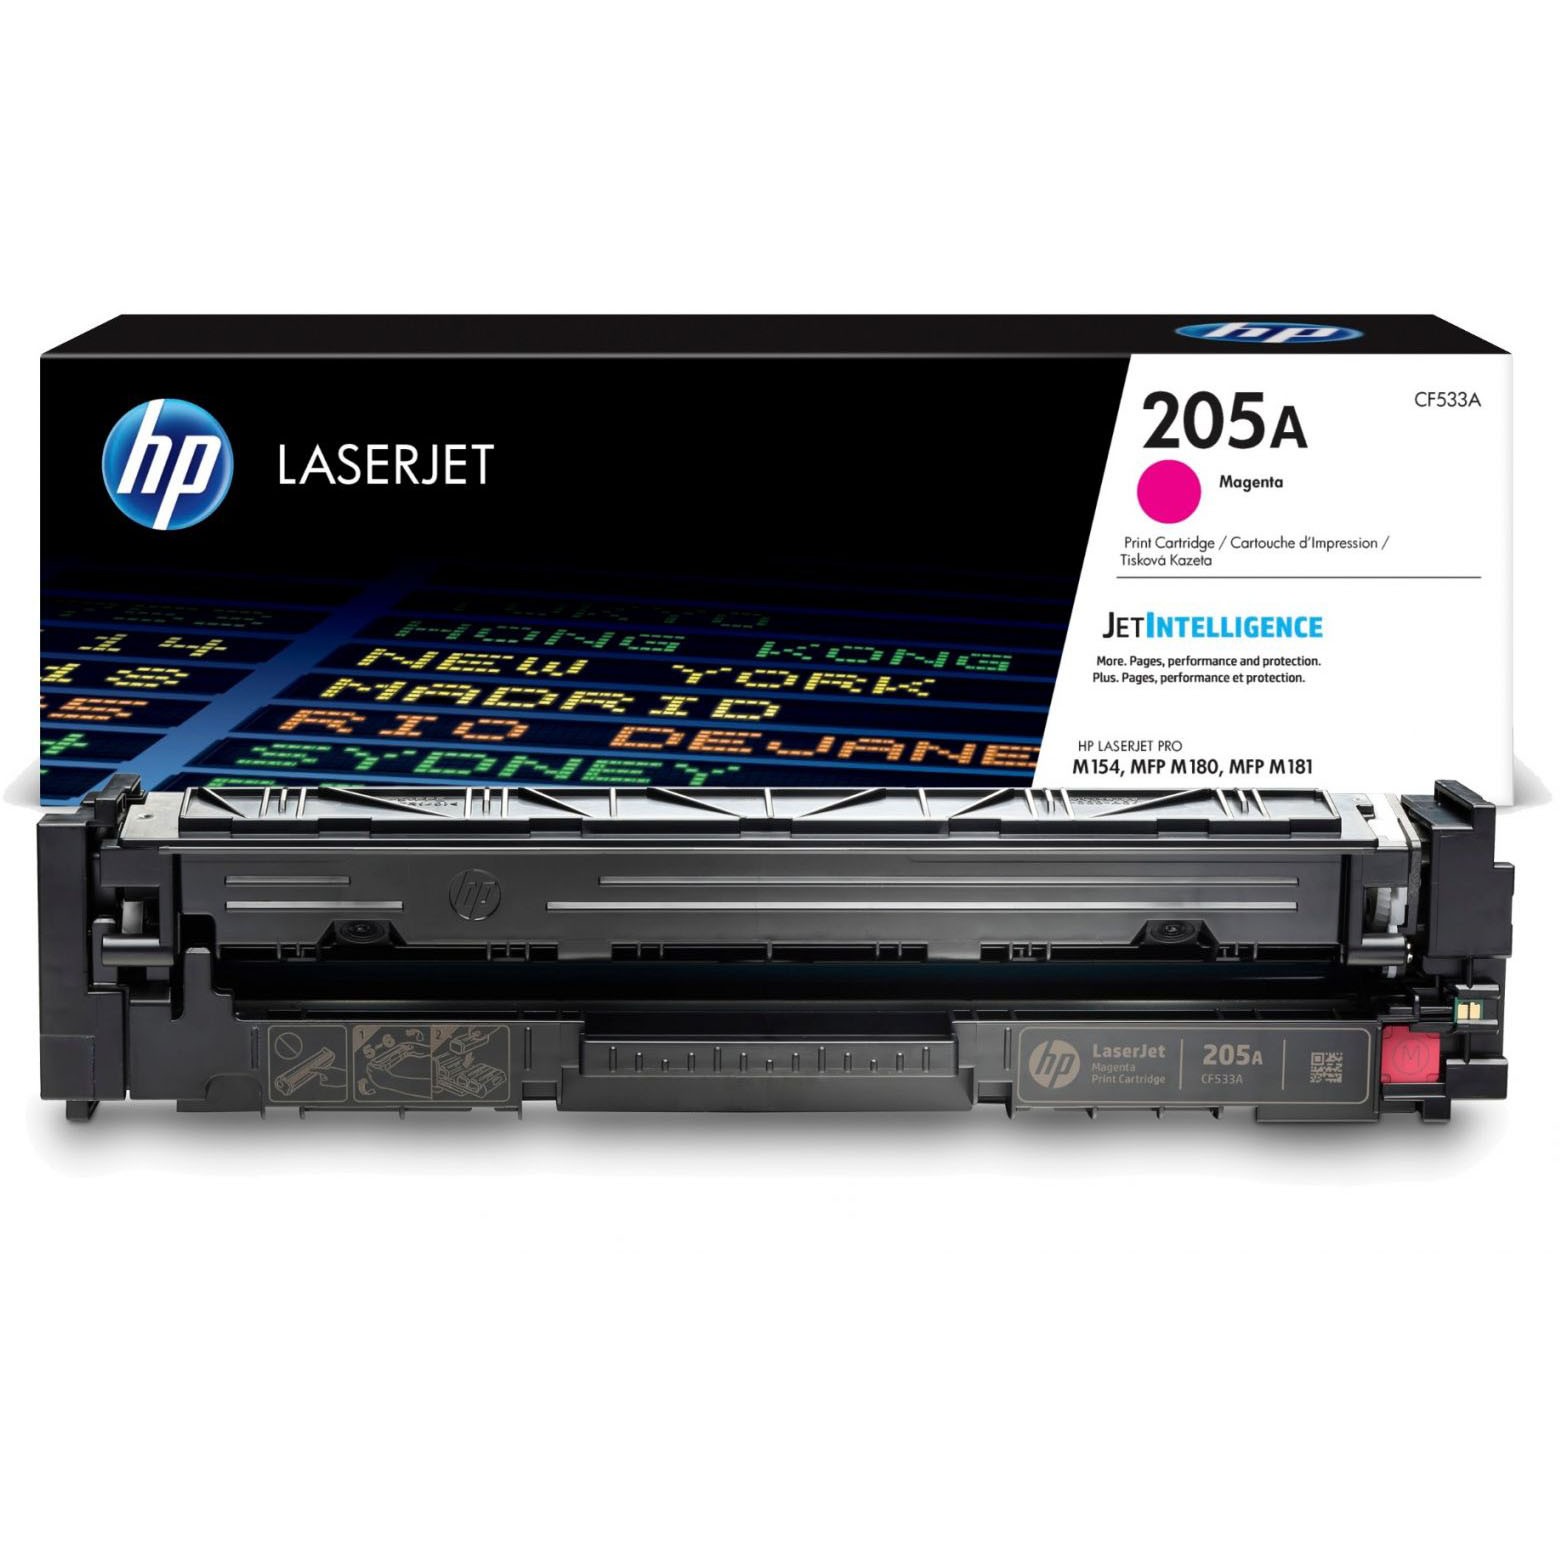 HP 205A CF533A magenta lasertoner, 900 sider